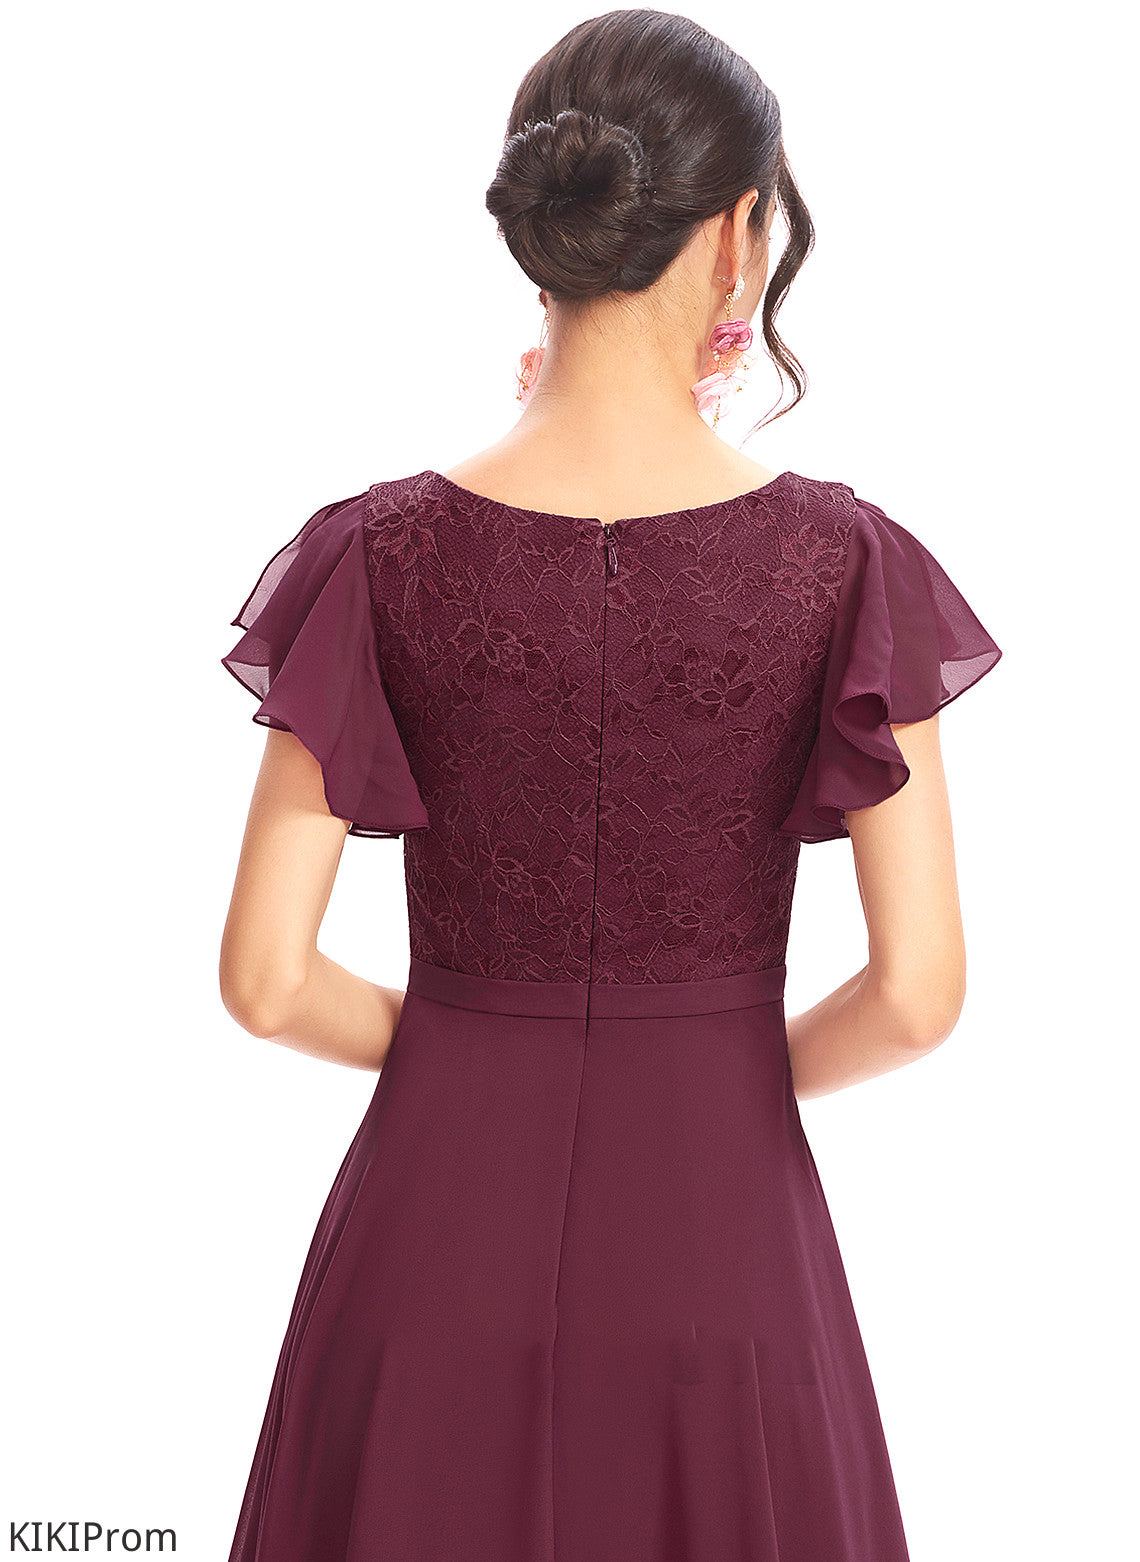 Fabric Silhouette Length Neckline A-Line Embellishment Lace CascadingRuffles Asymmetrical V-neck Autumn Bridesmaid Dresses